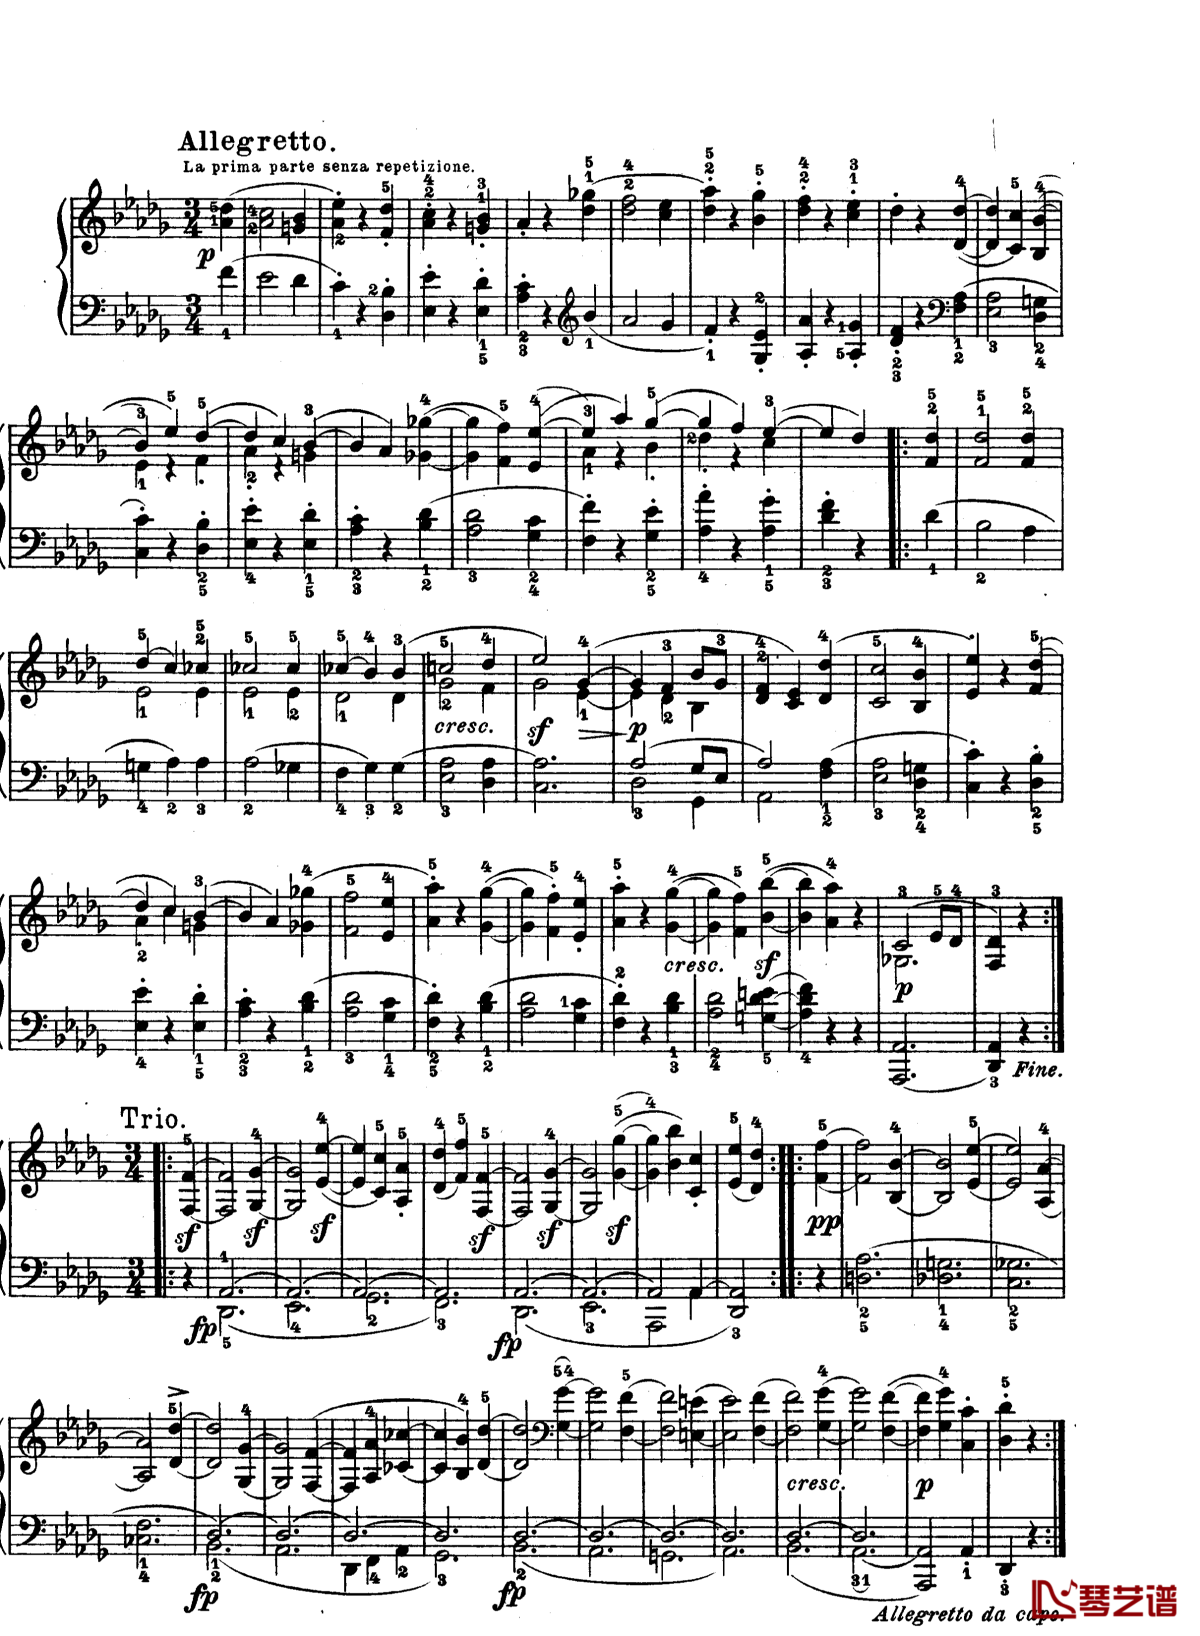 月光曲钢琴谱-第十四钢琴奏鸣曲-贝多芬